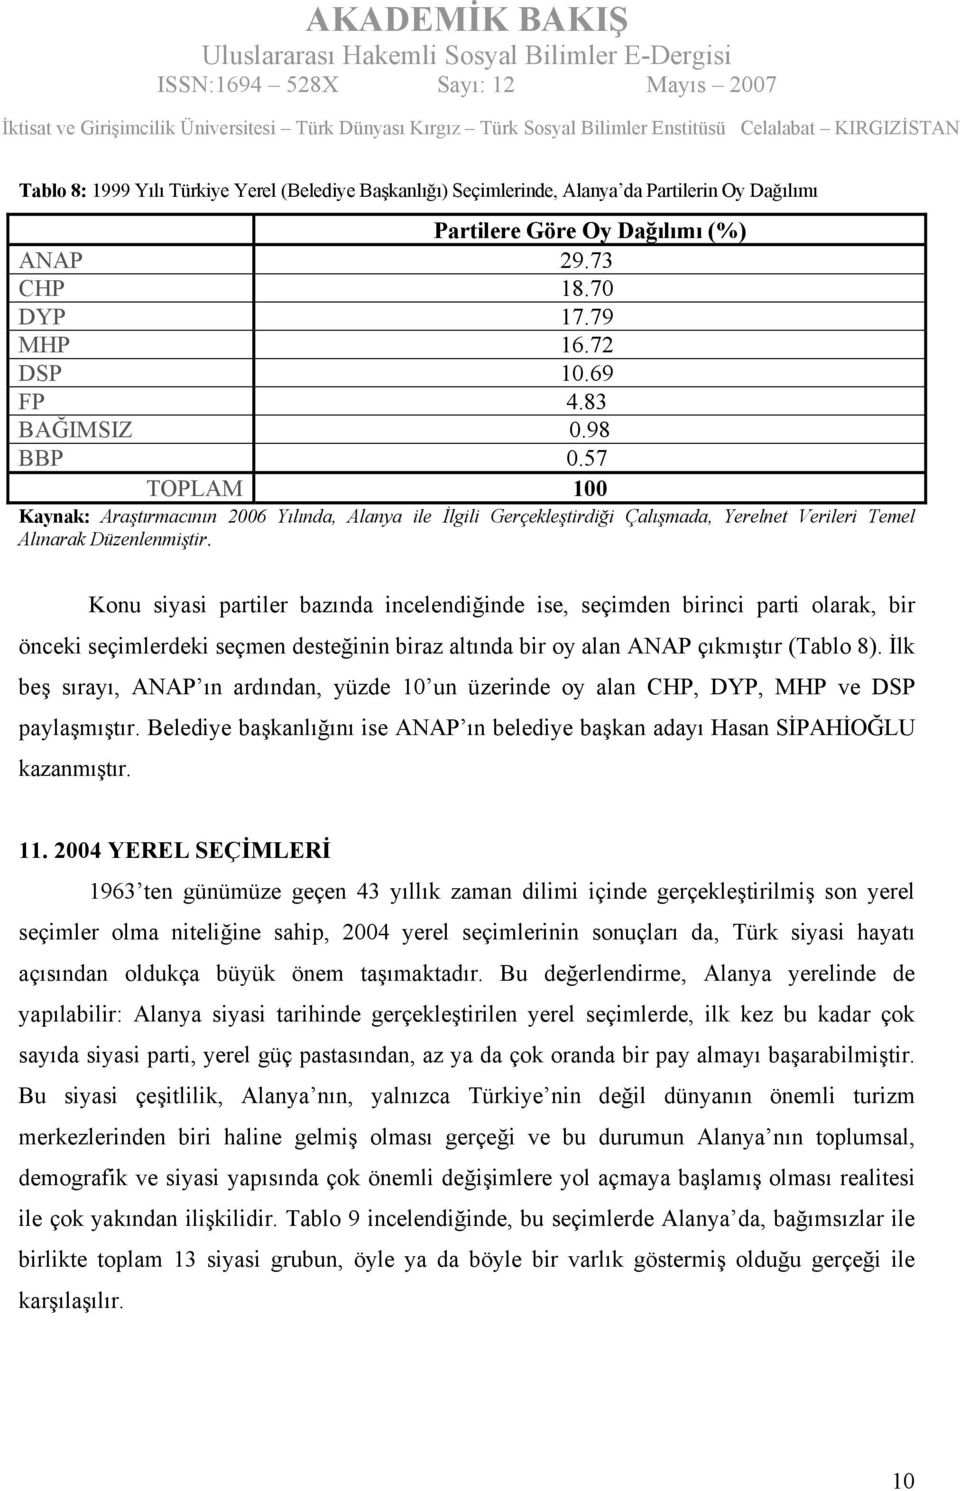 İlk beş sırayı, ANAP ın ardından, yüzde 10 un üzerinde oy alan CHP, DYP, MHP ve DSP paylaşmıştır. Belediye başkanlığını ise ANAP ın belediye başkan adayı Hasan SİPAHİOĞLU kazanmıştır. 11.